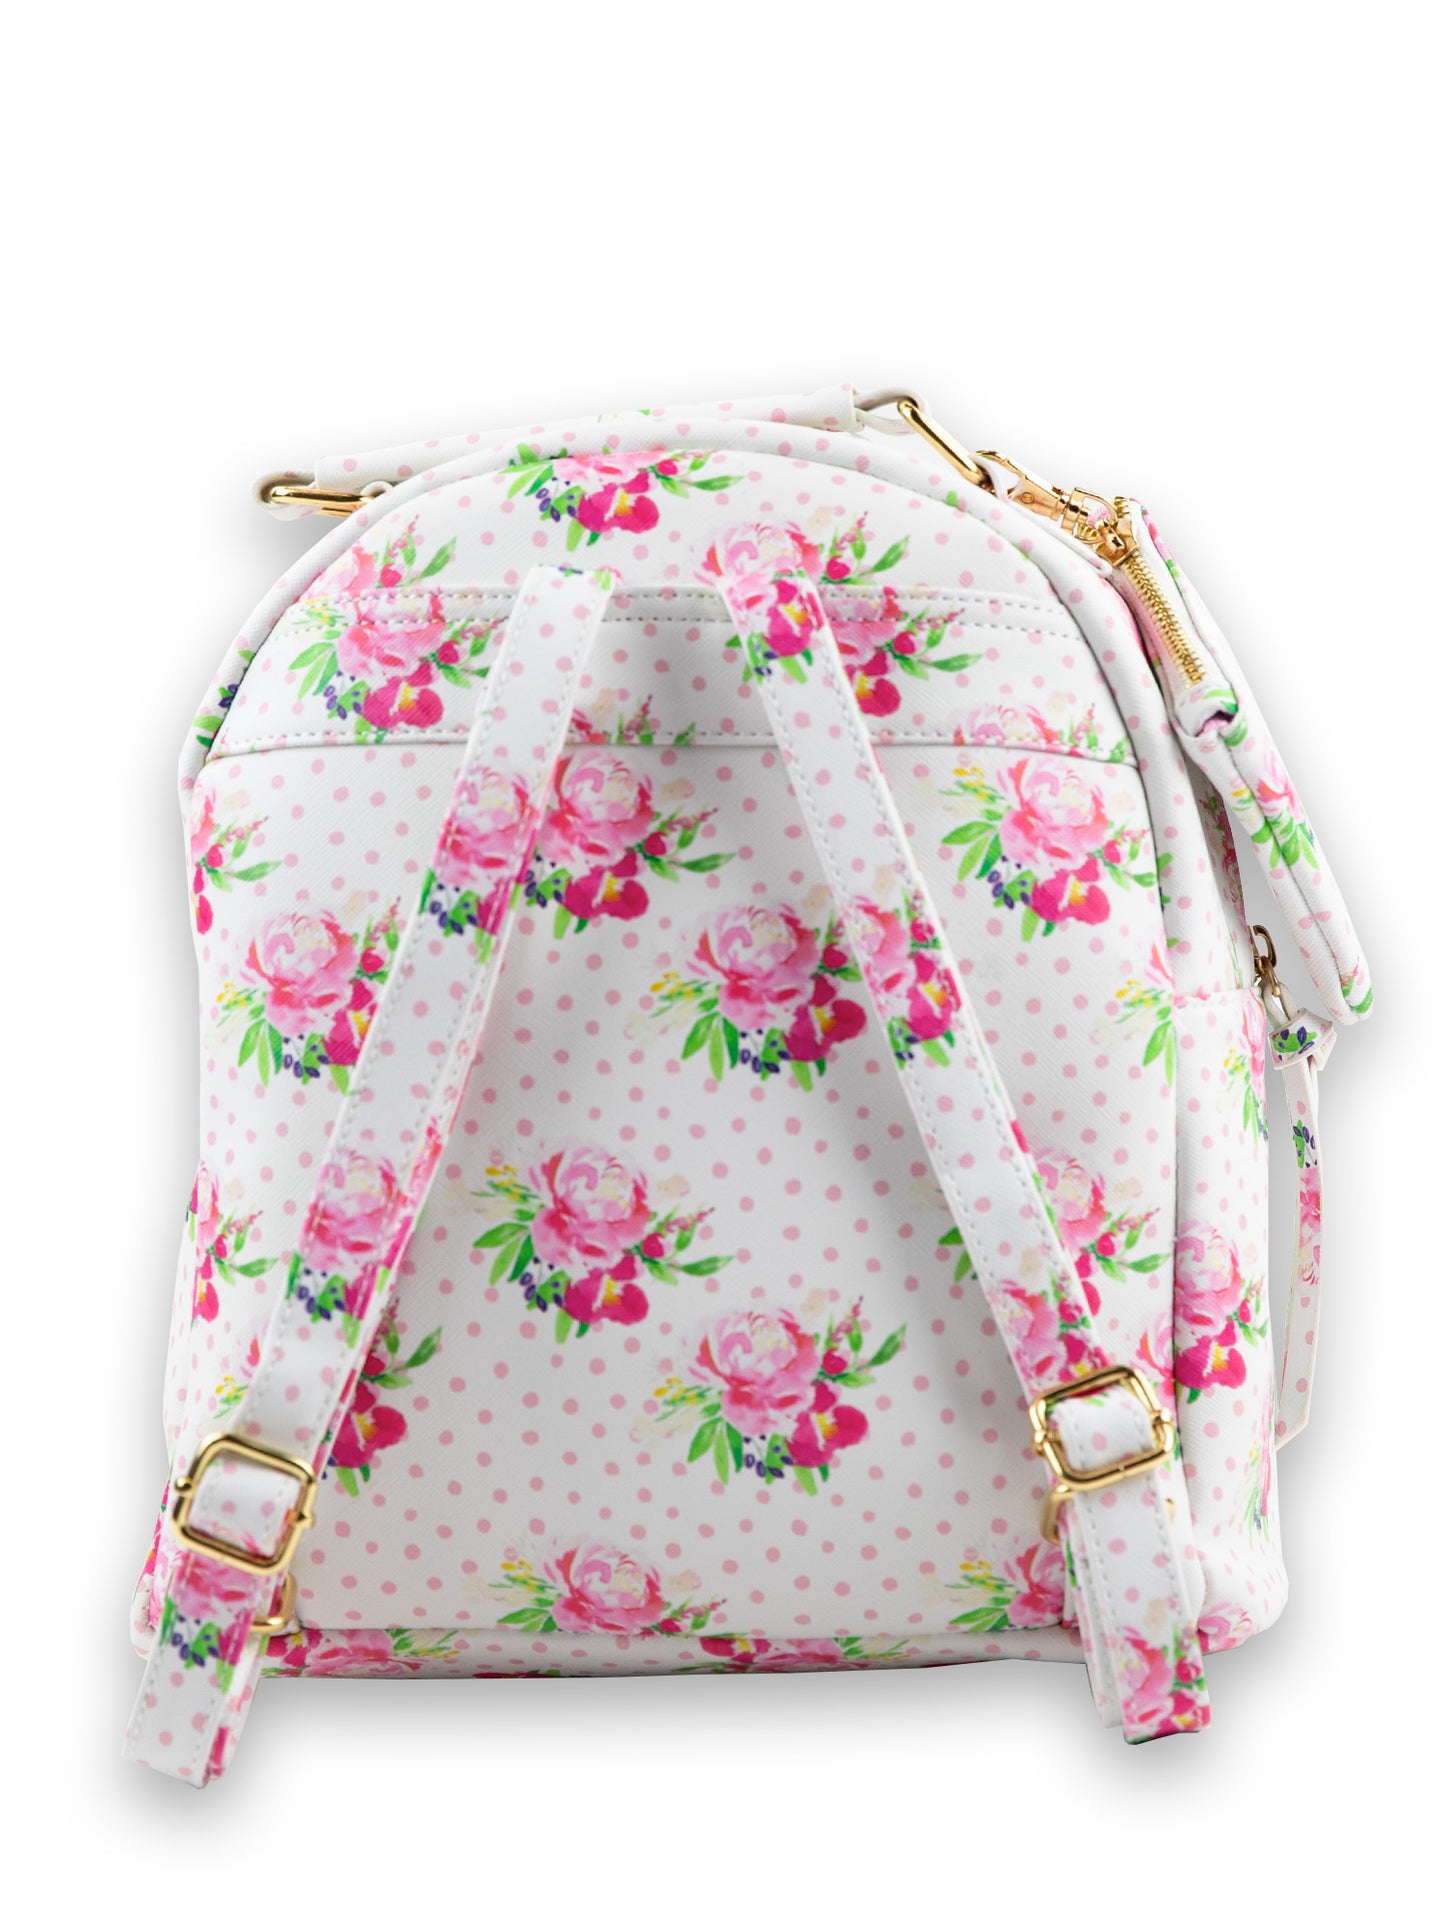 Serena Mini Backpack